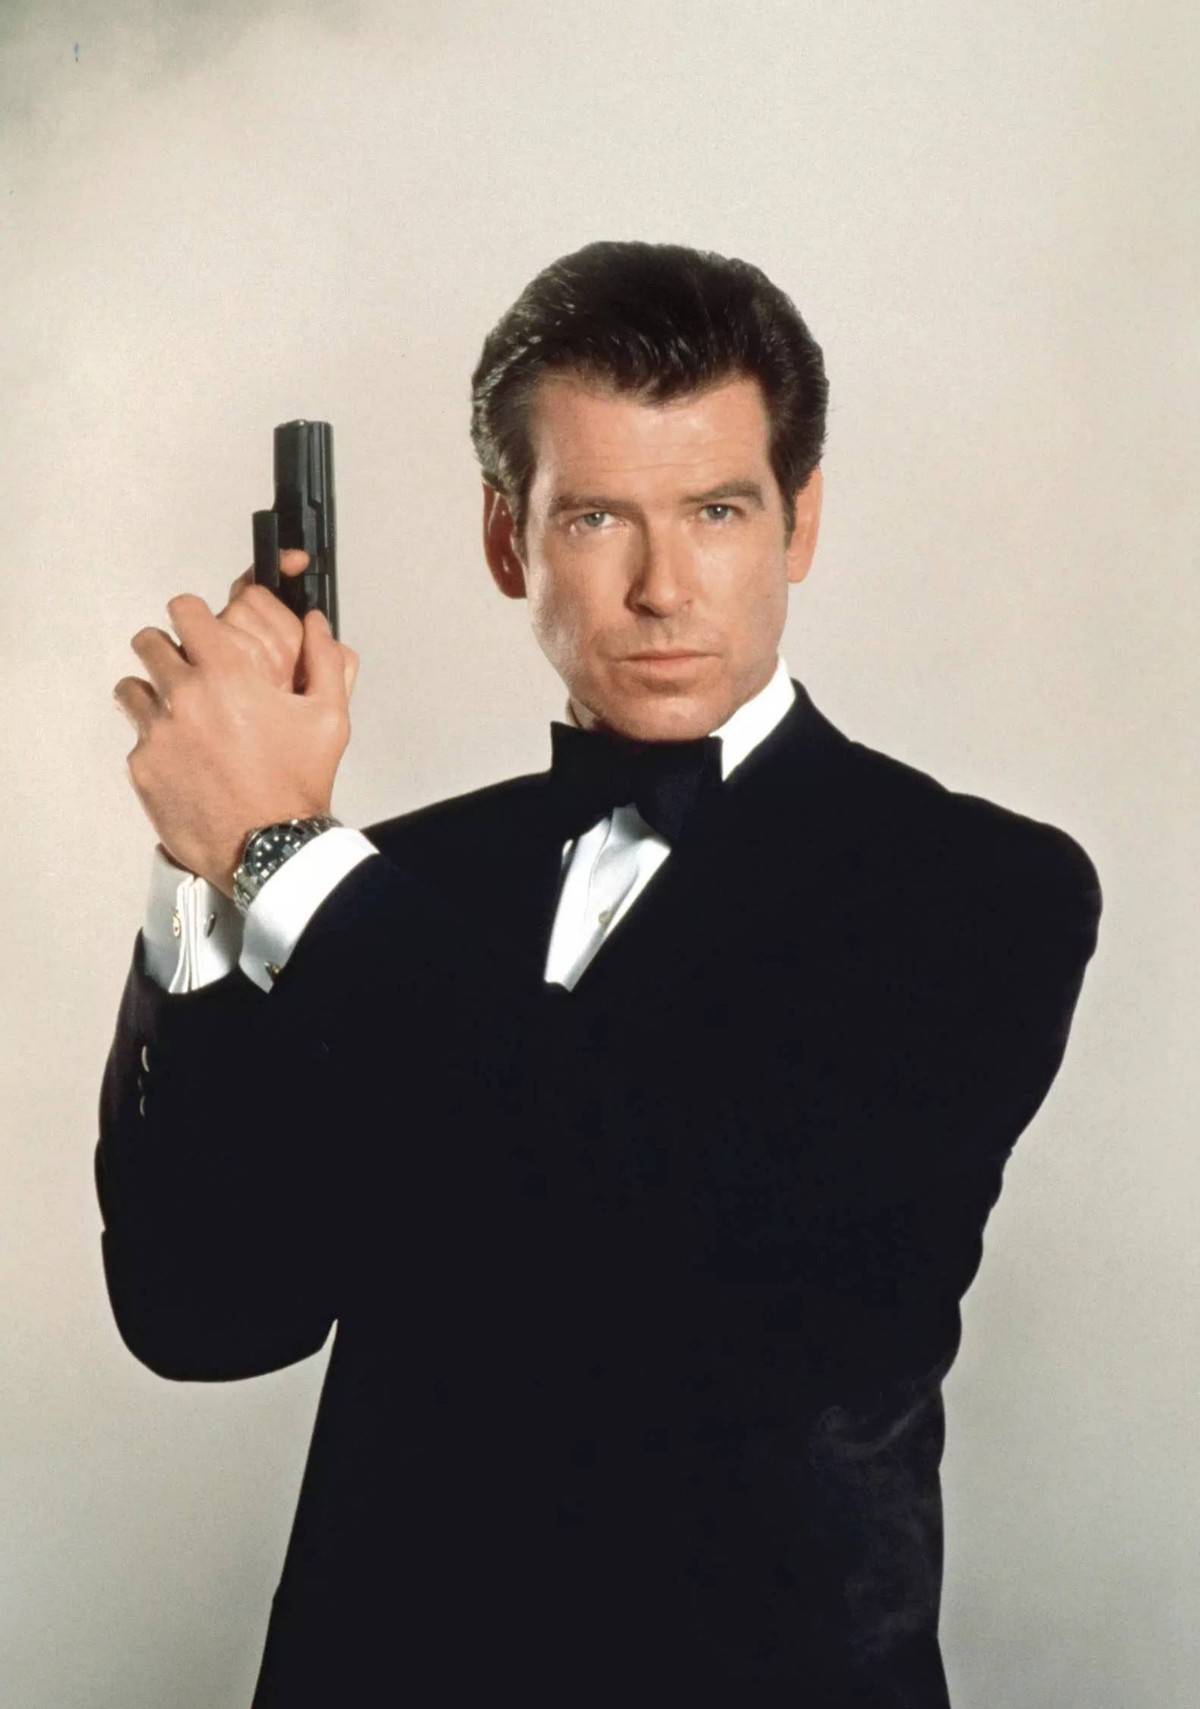 皮尔斯·布鲁斯南从《007黄金眼》开始,一共出演过四部007作品,并因此